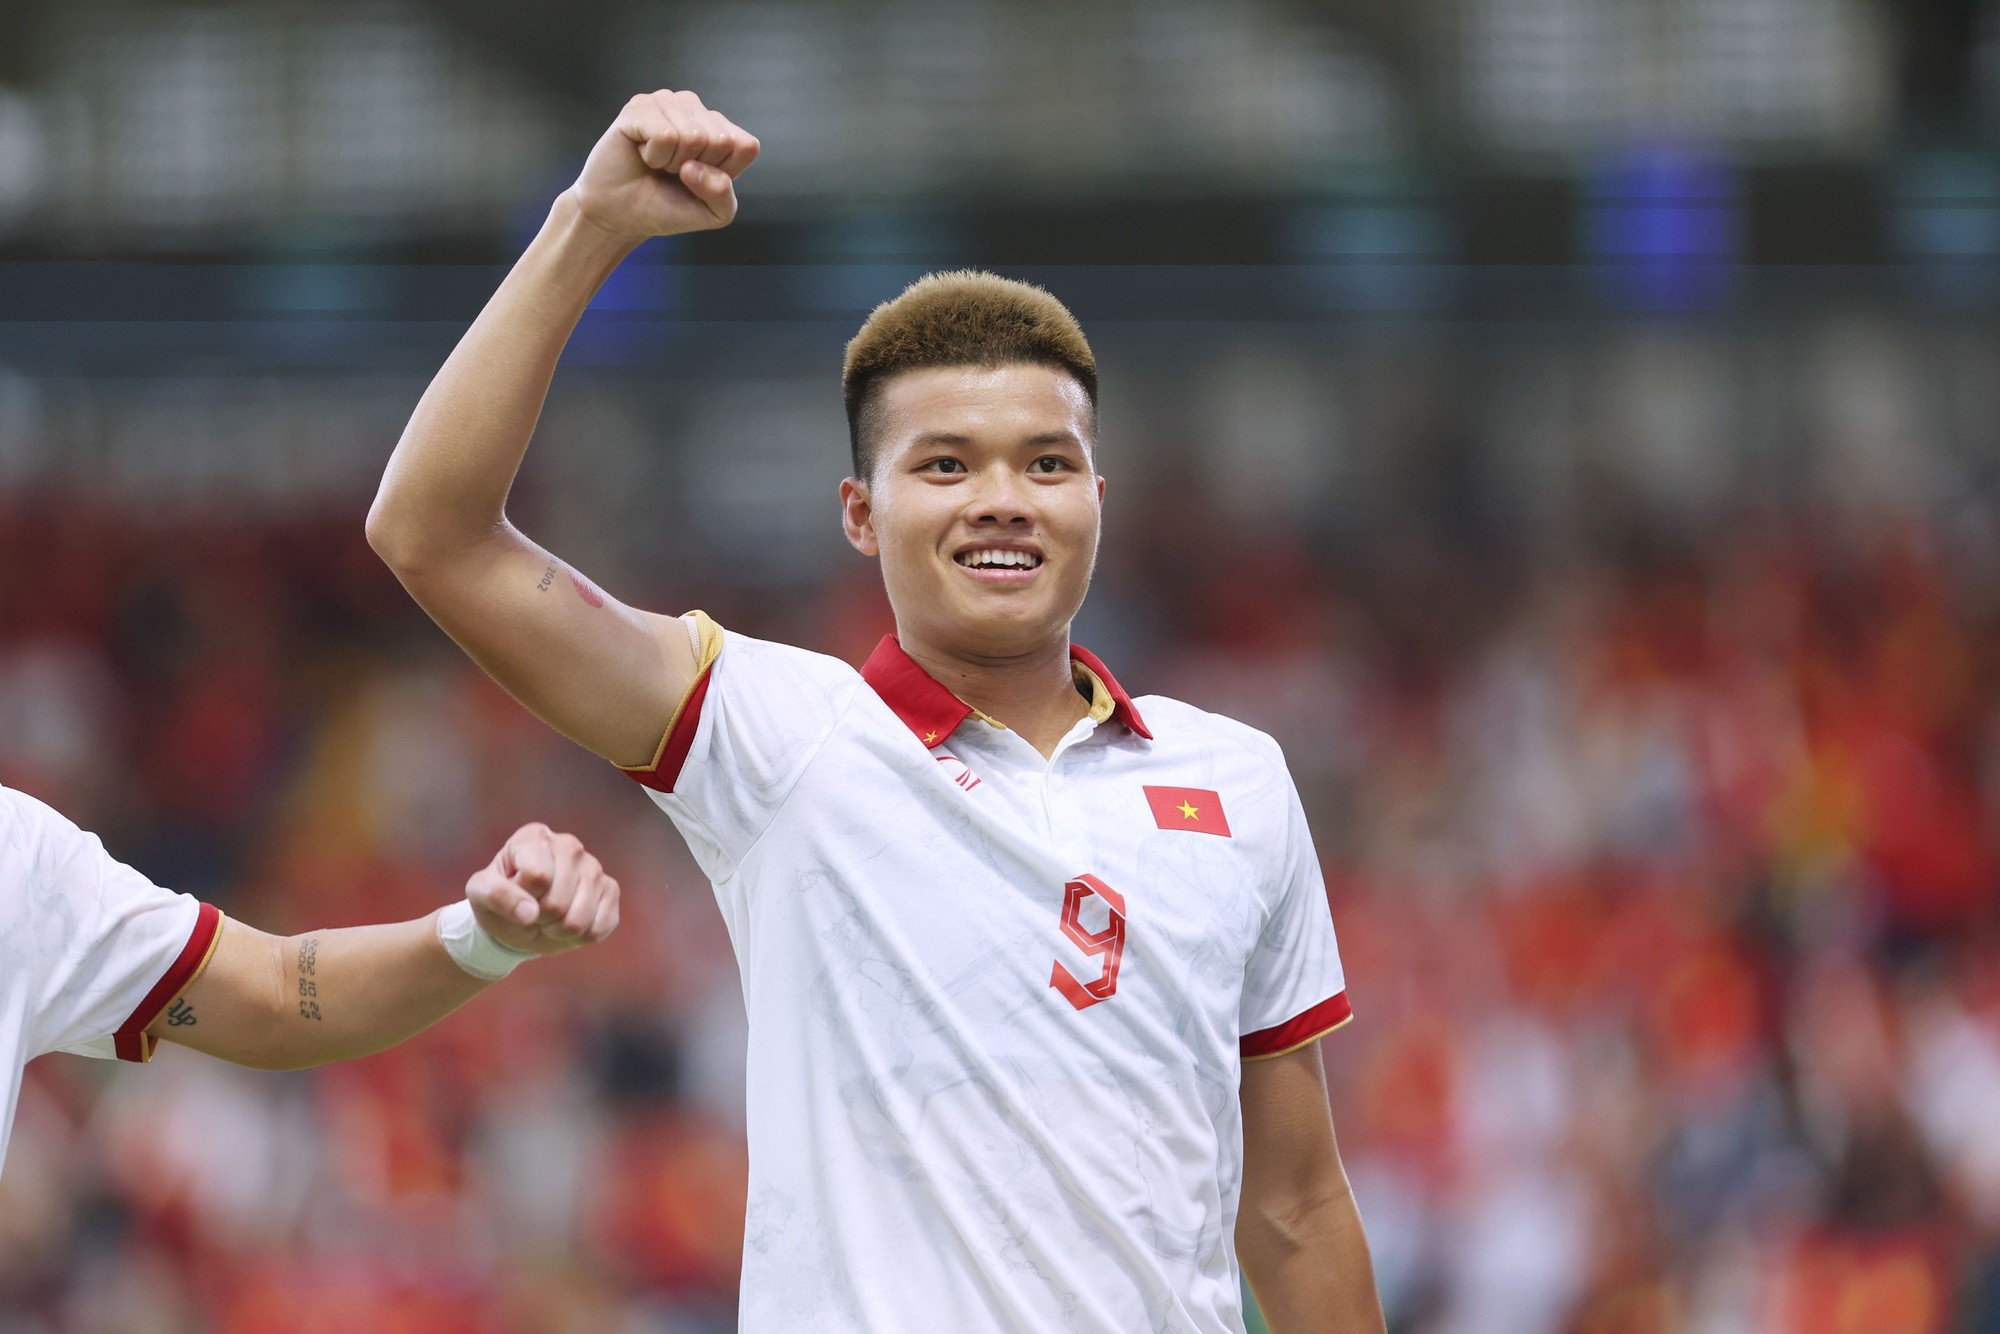 HLV Troussier hài lòng về trận thắng U.22 Singapore: ‘U.22 Việt Nam không sợ hãi’ - Ảnh 1.